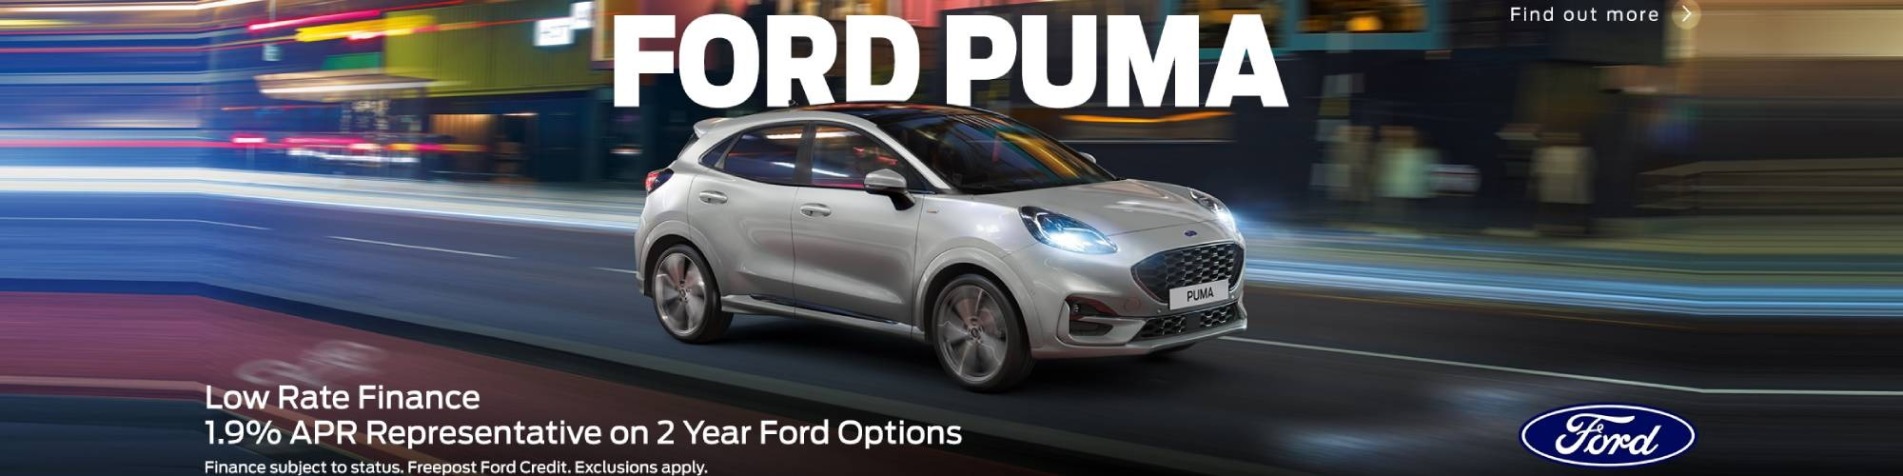 Ford Puma Offer